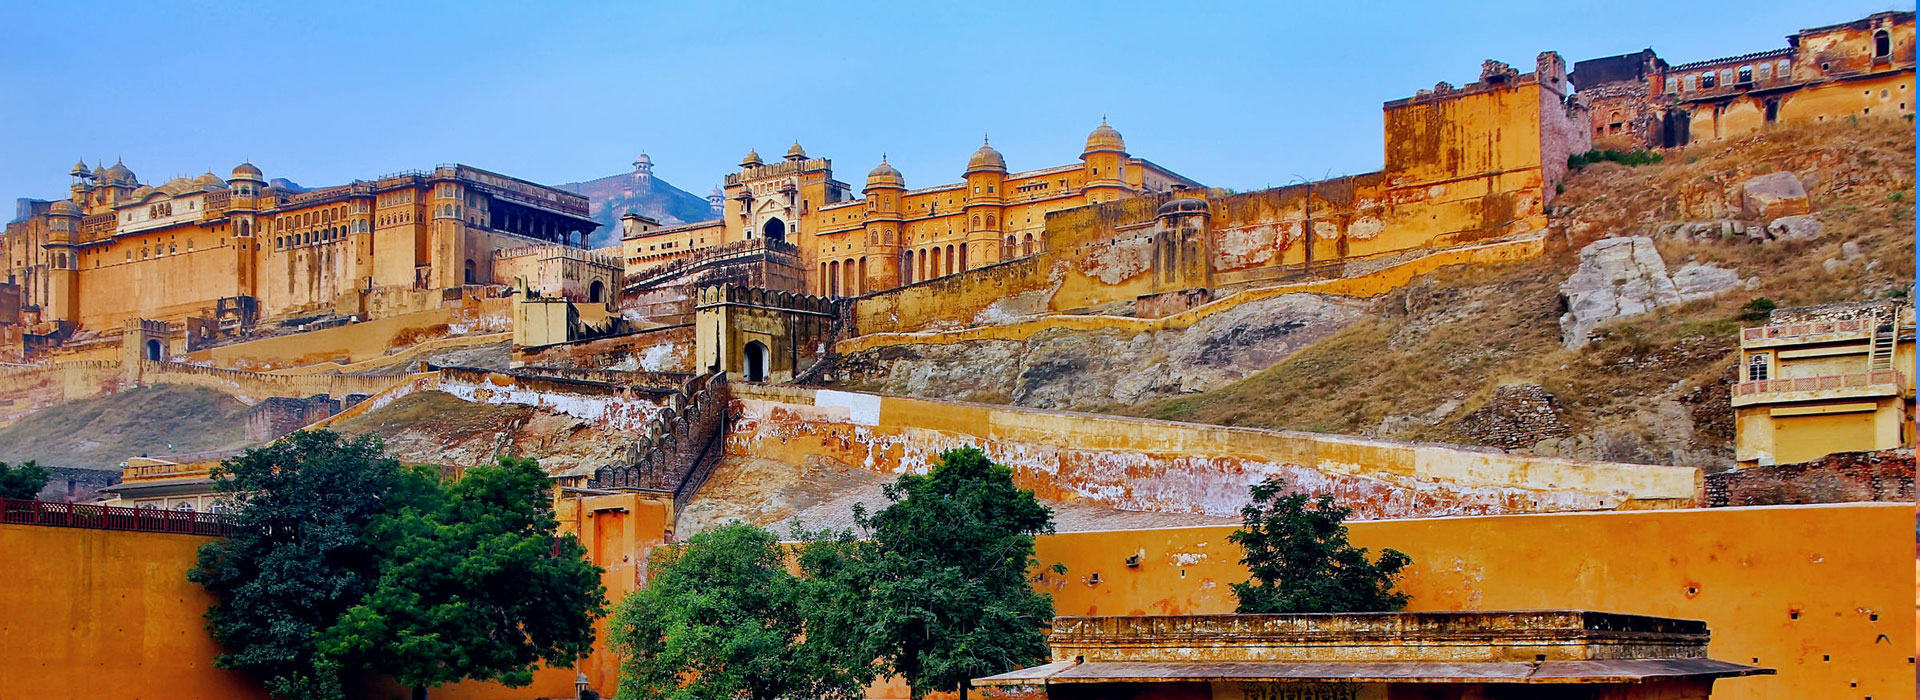 Delhi, Agra, Jaipur Tour by Car-2N3D